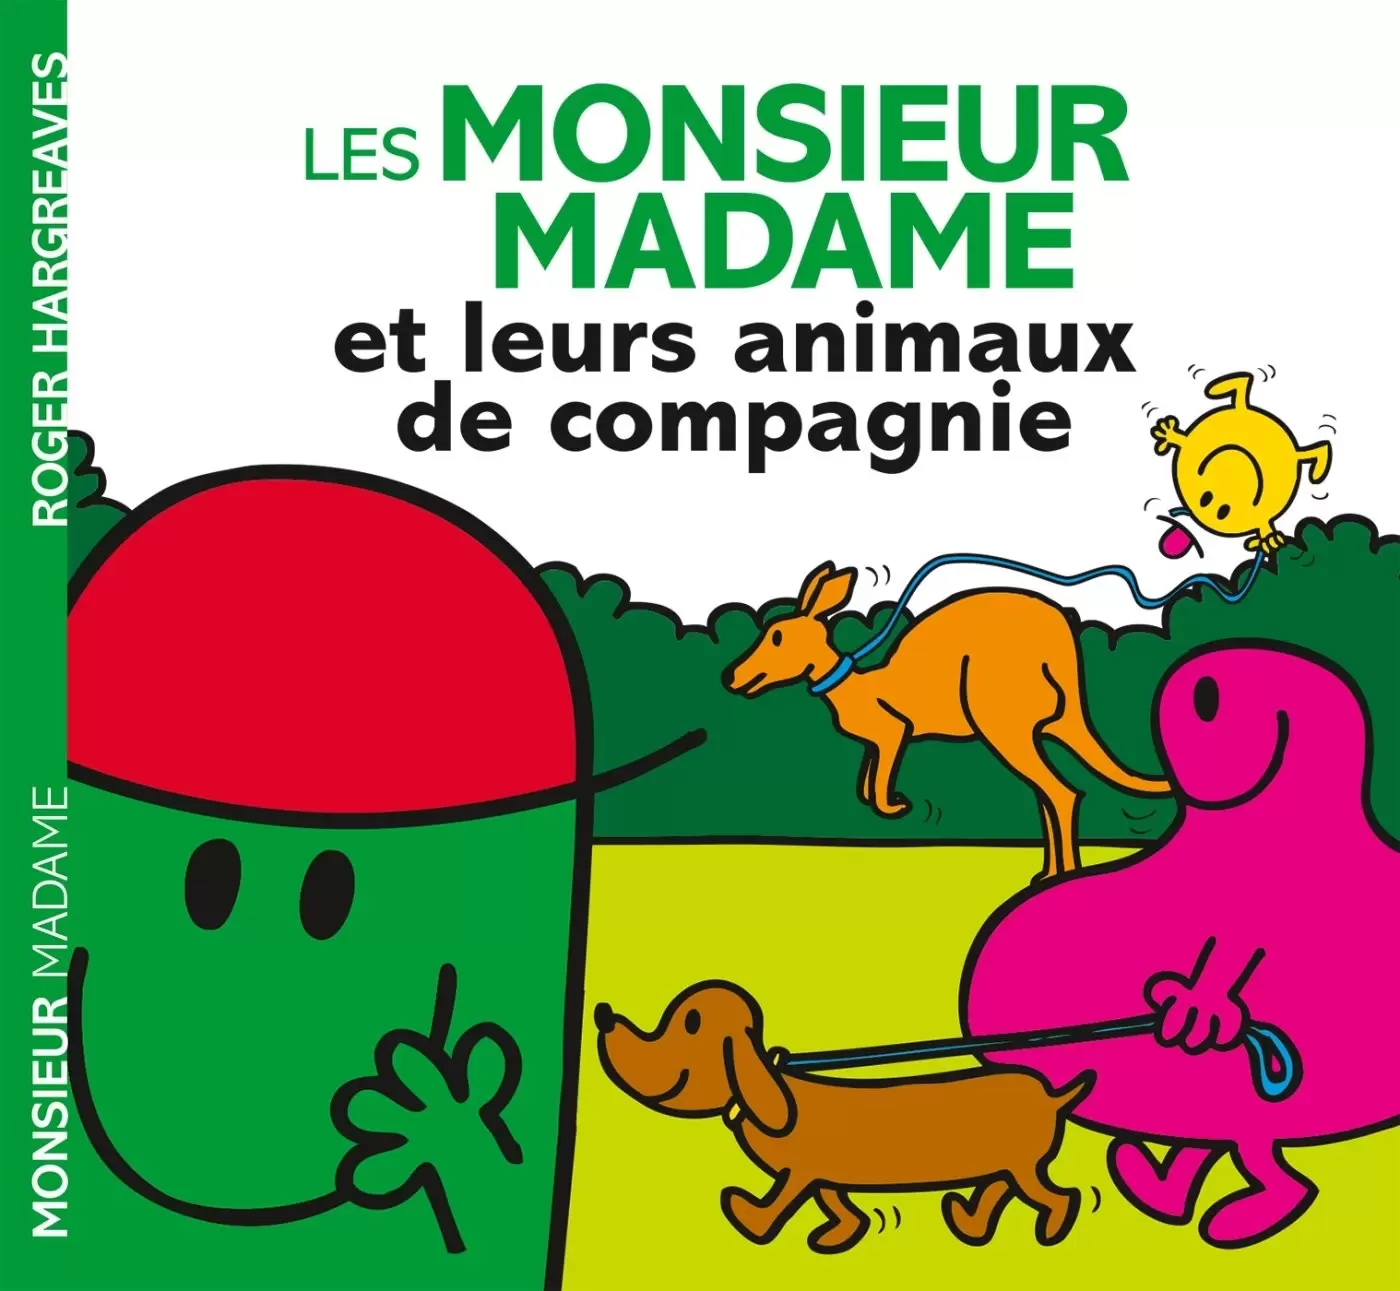 Aventures Monsieur Madame - Les Monsieur Madame et leurs animaux de compagnie